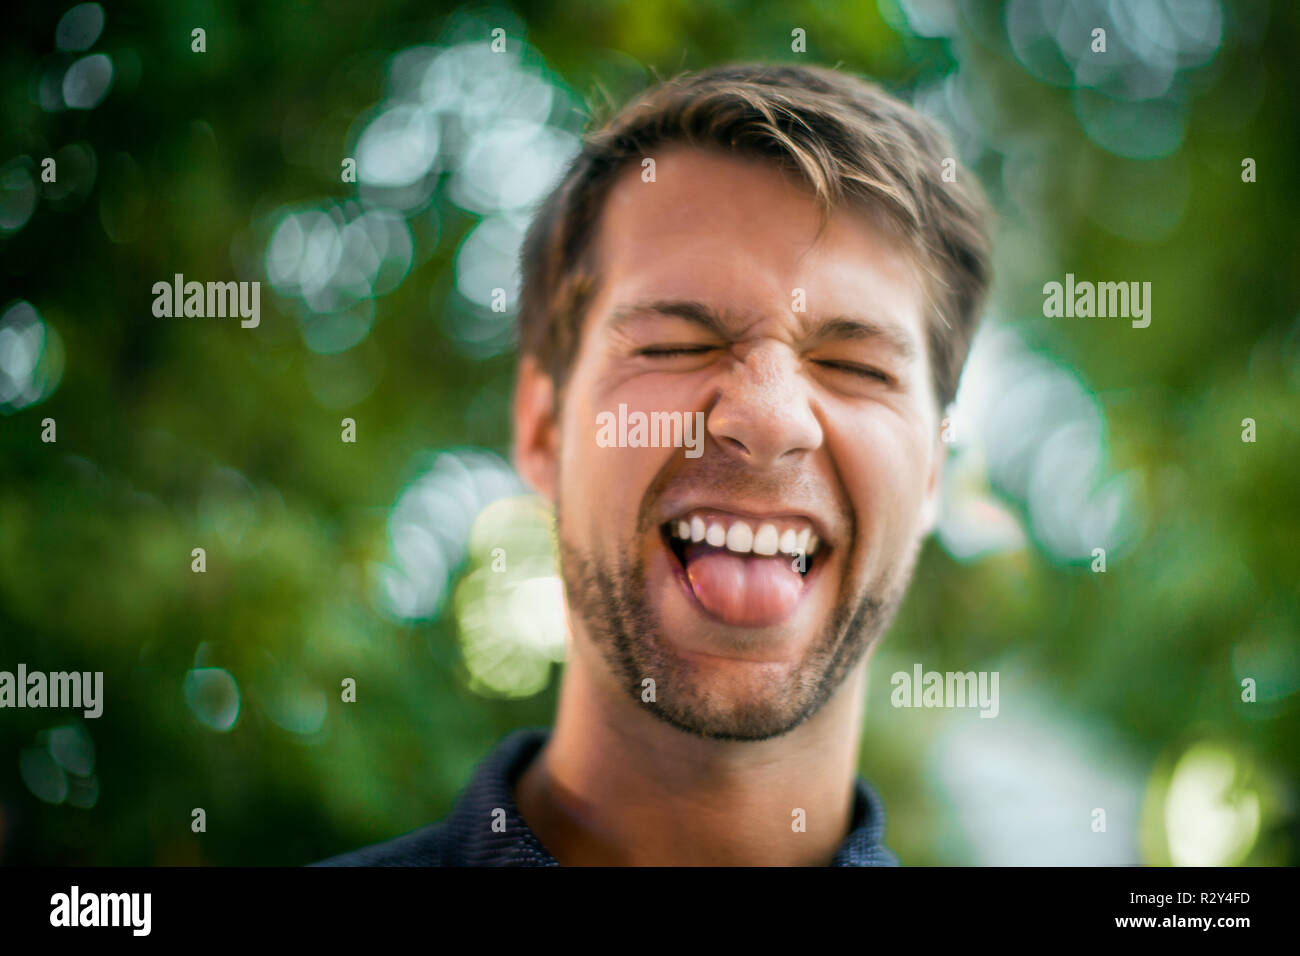 Glückliche junge Menschen ziehen ein Gesicht und seine Zunge heraus haften. Stockfoto